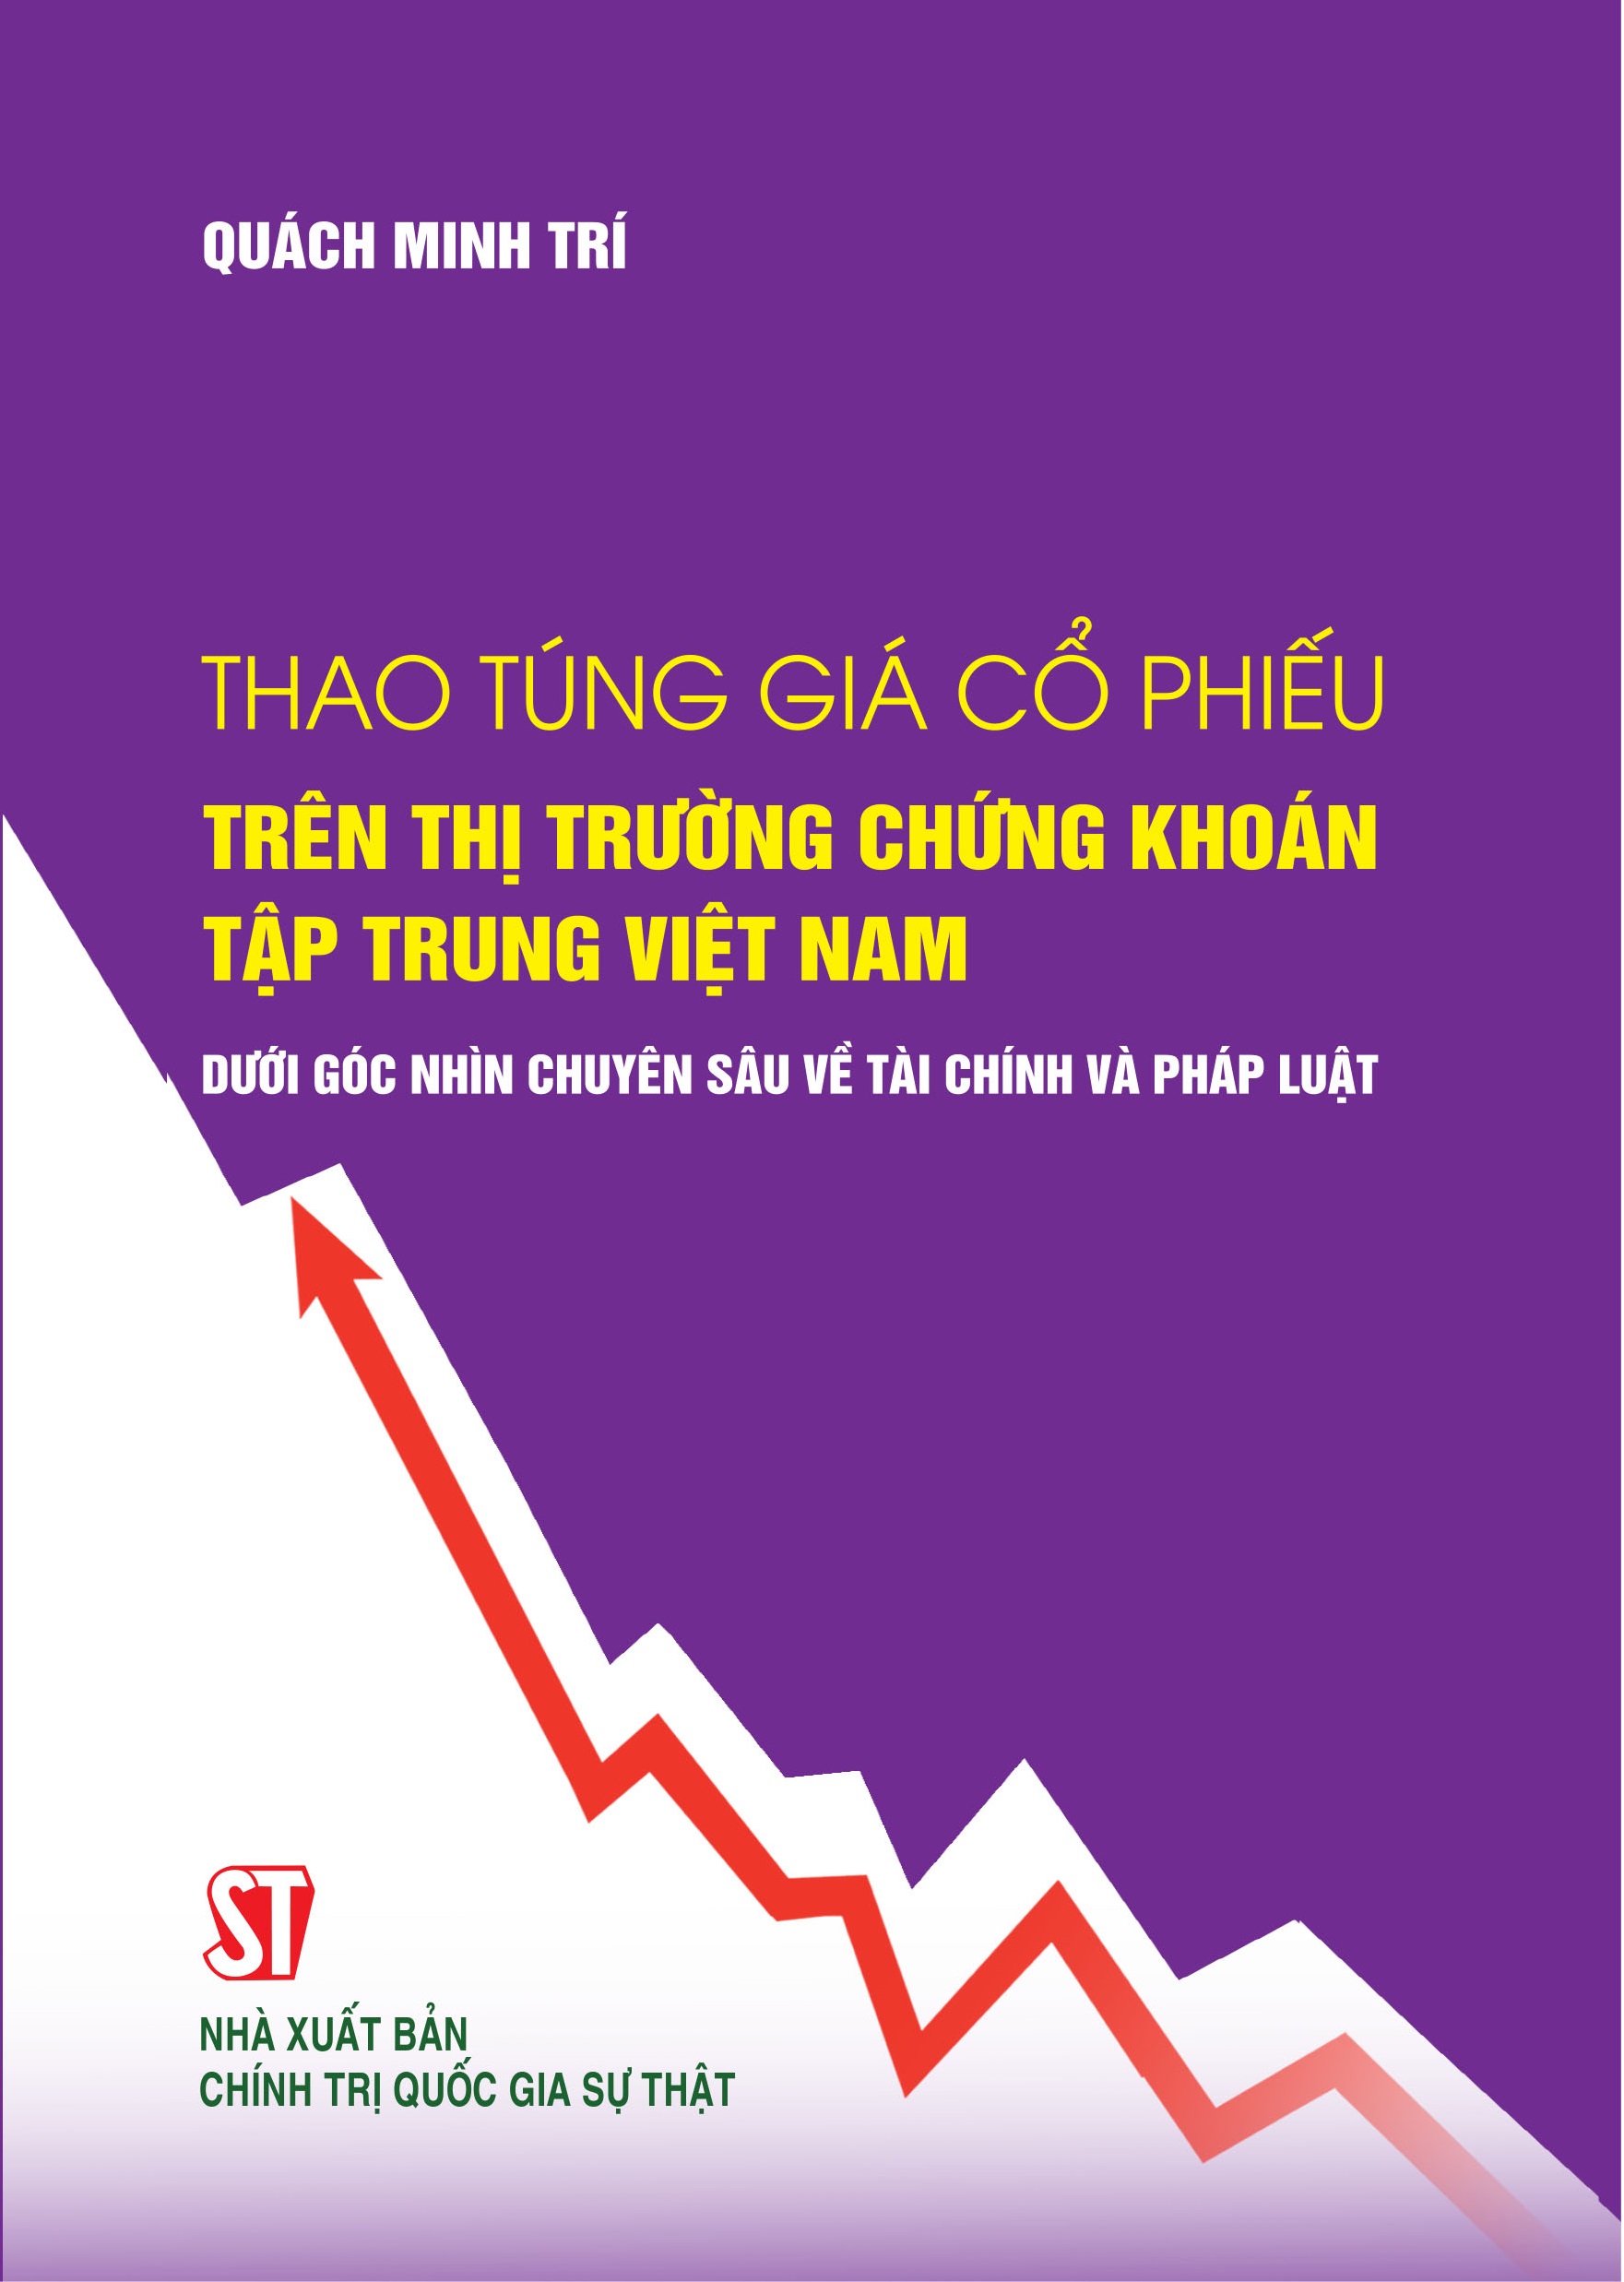 Thao túng giá cổ phiếu trên thị trường chứng khoán tập trung Việt Nam dưới góc nhìn chuyên sâu về tài chính và pháp luật